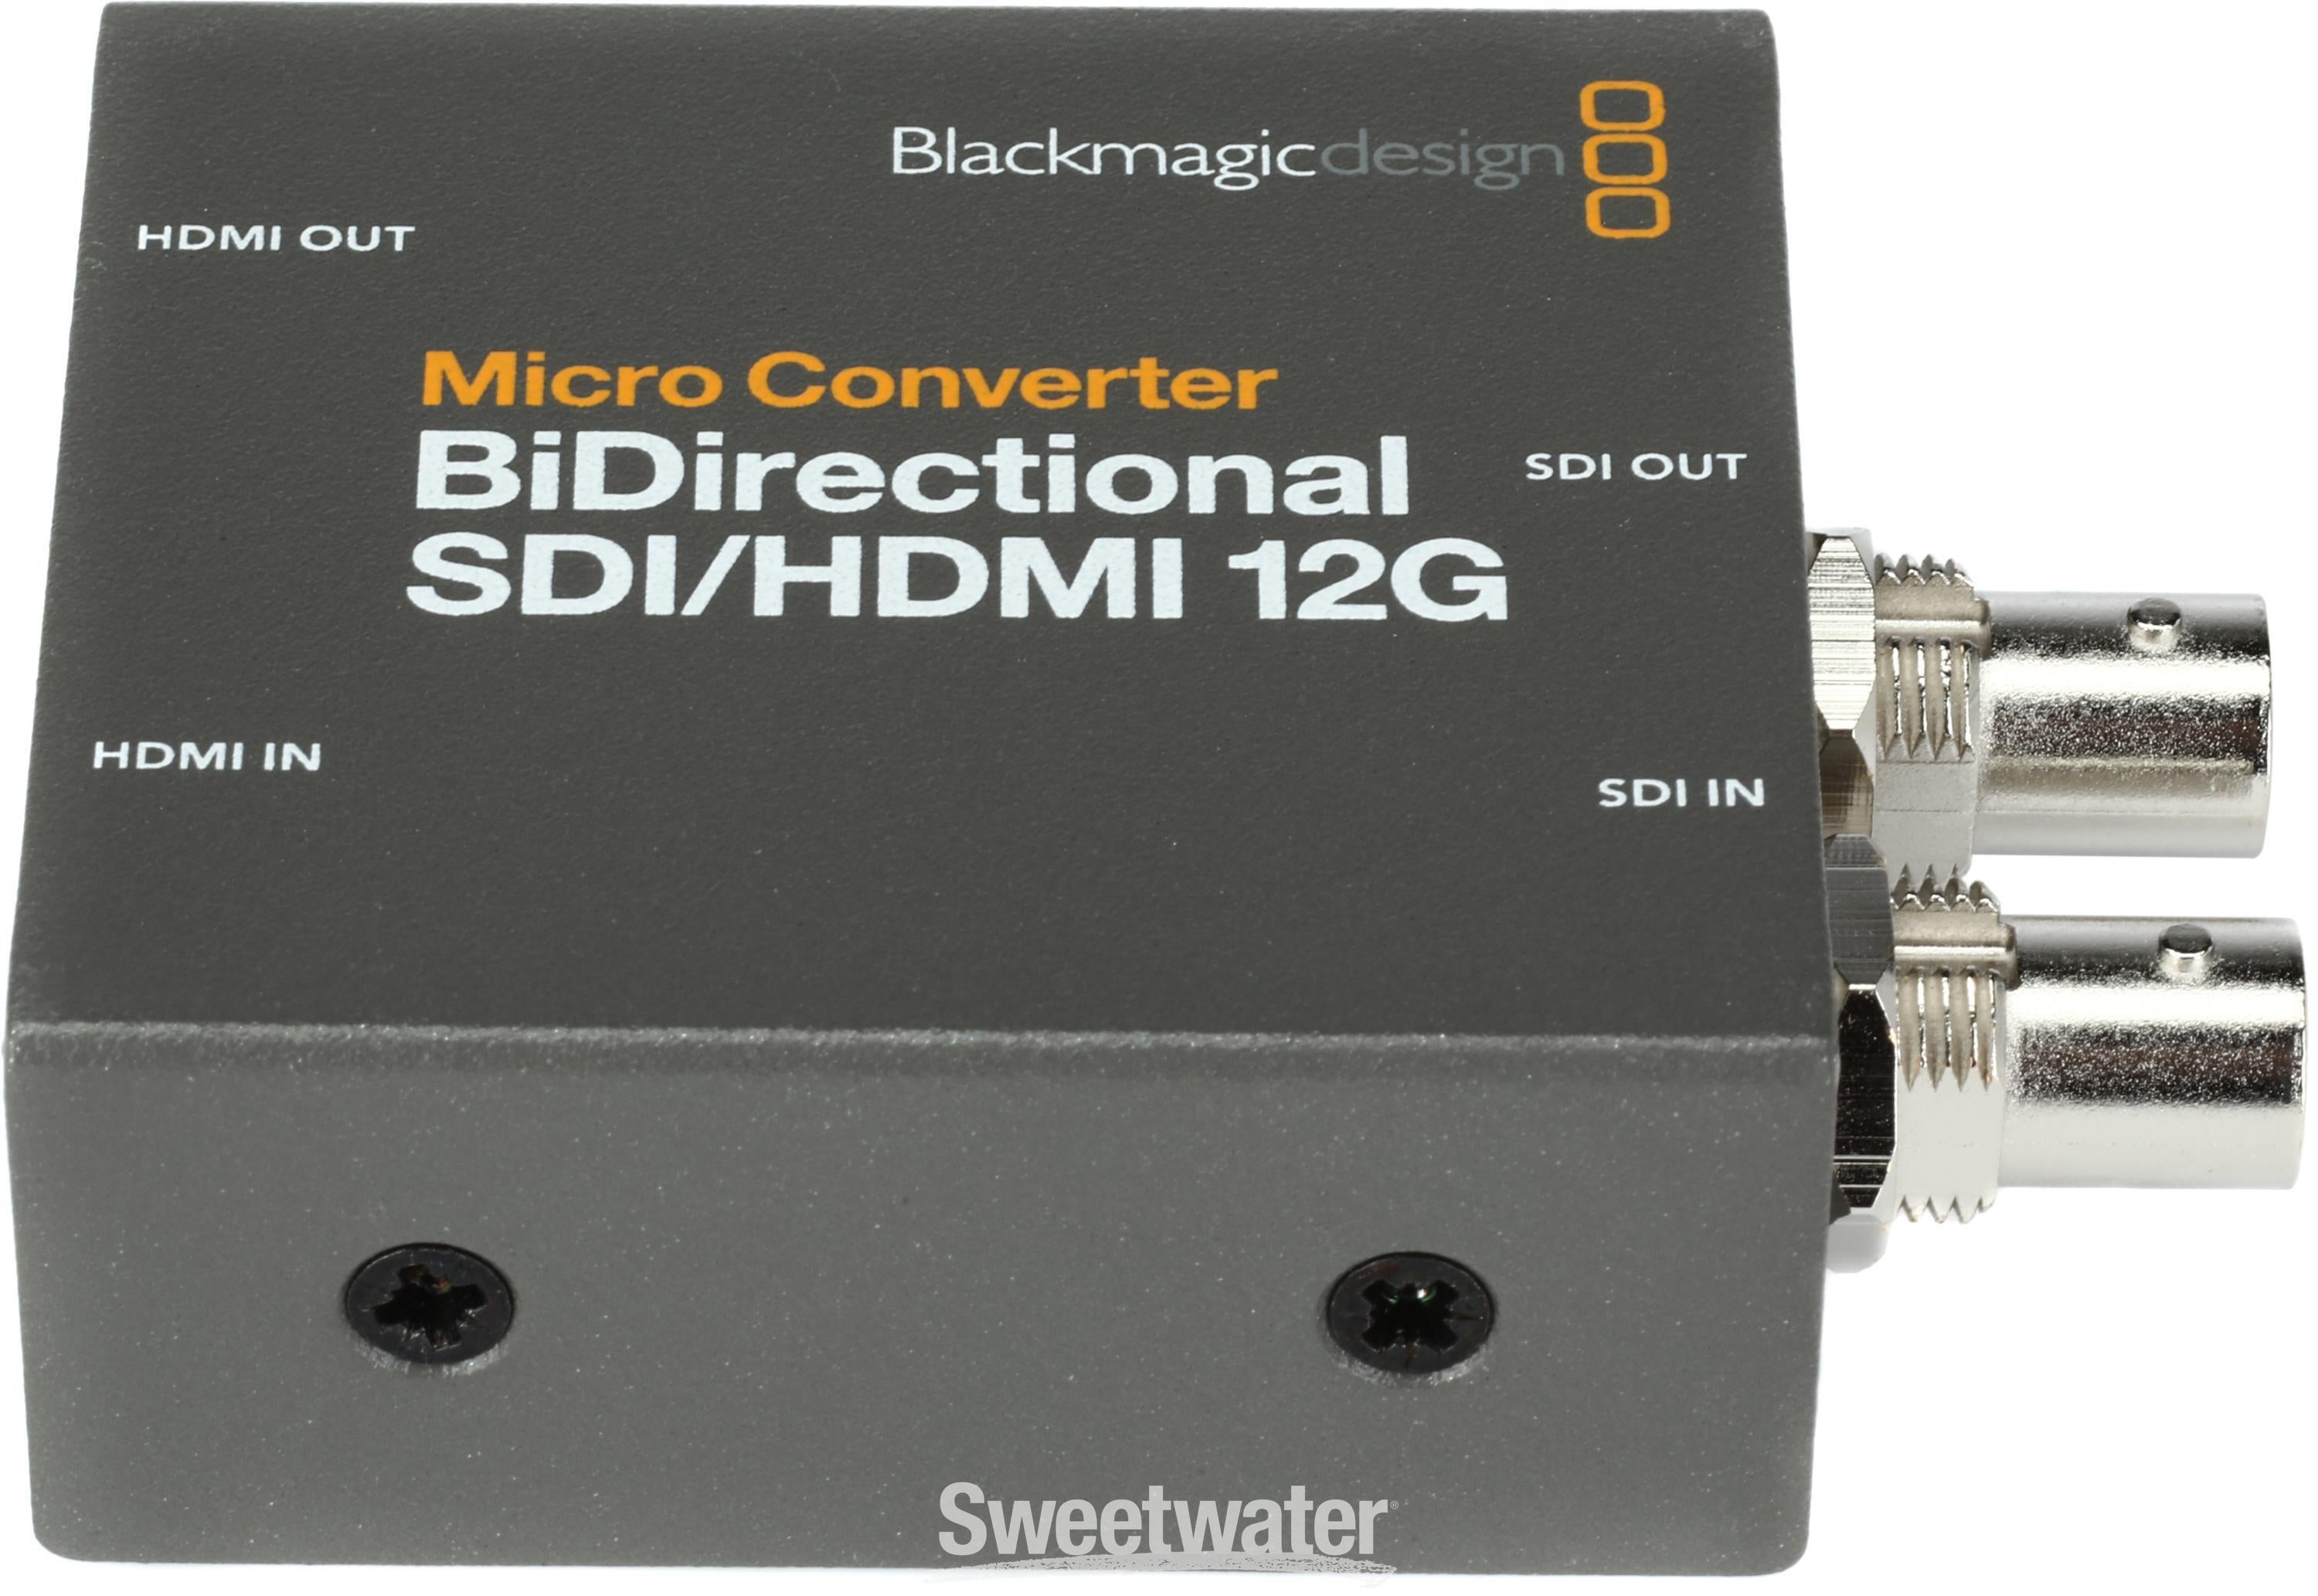 Blackmagic Design Bidirectional SDI/HDMI 12G Micro Converter